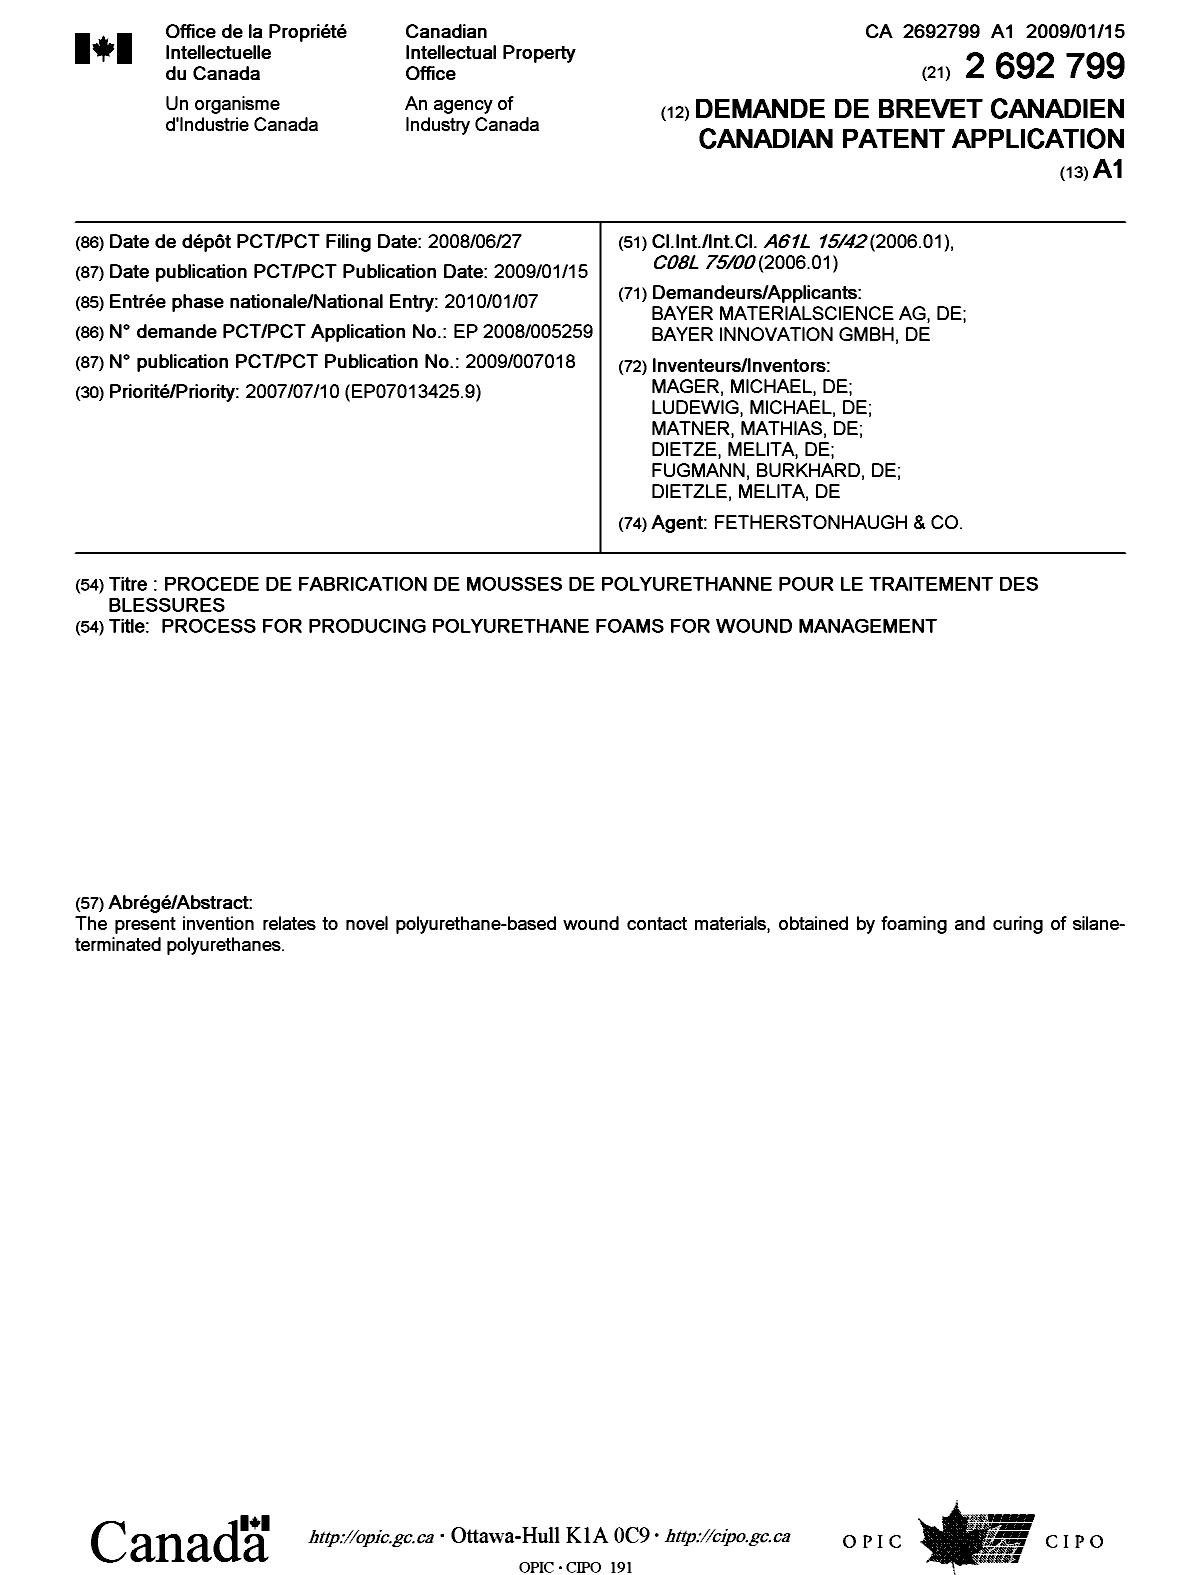 Document de brevet canadien 2692799. Page couverture 20100322. Image 1 de 1